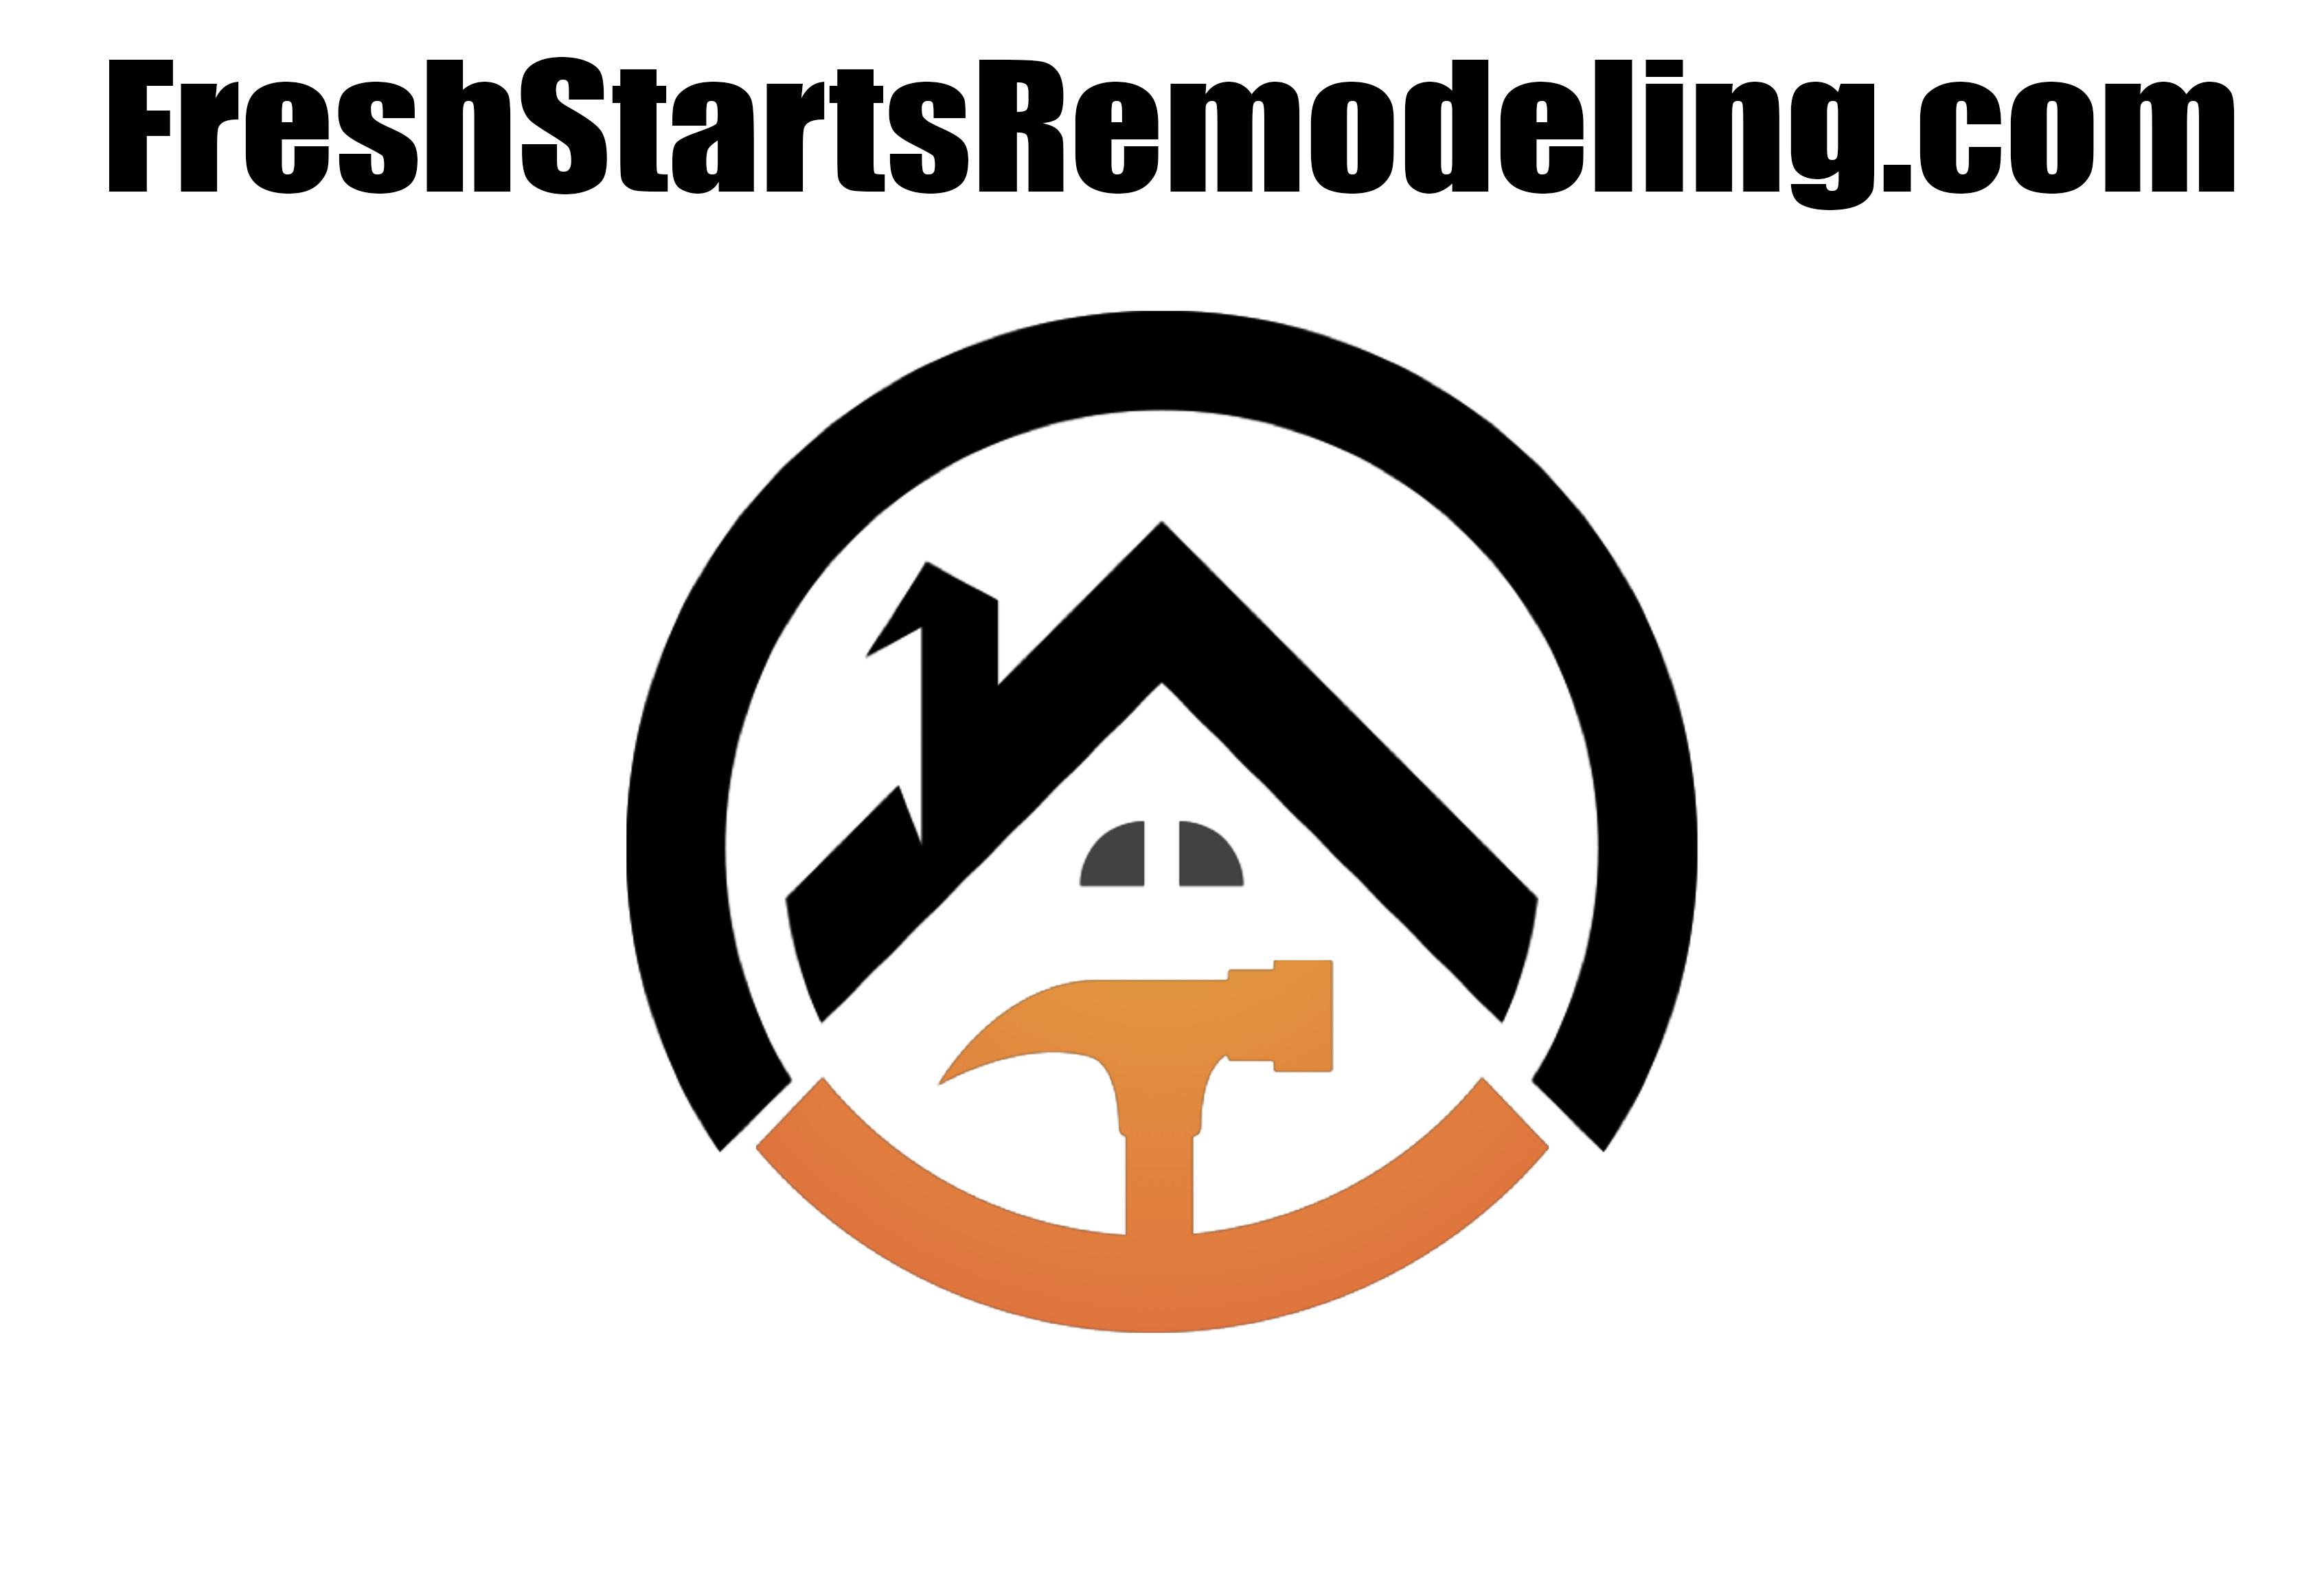 FreshStartsRemodeling Logo